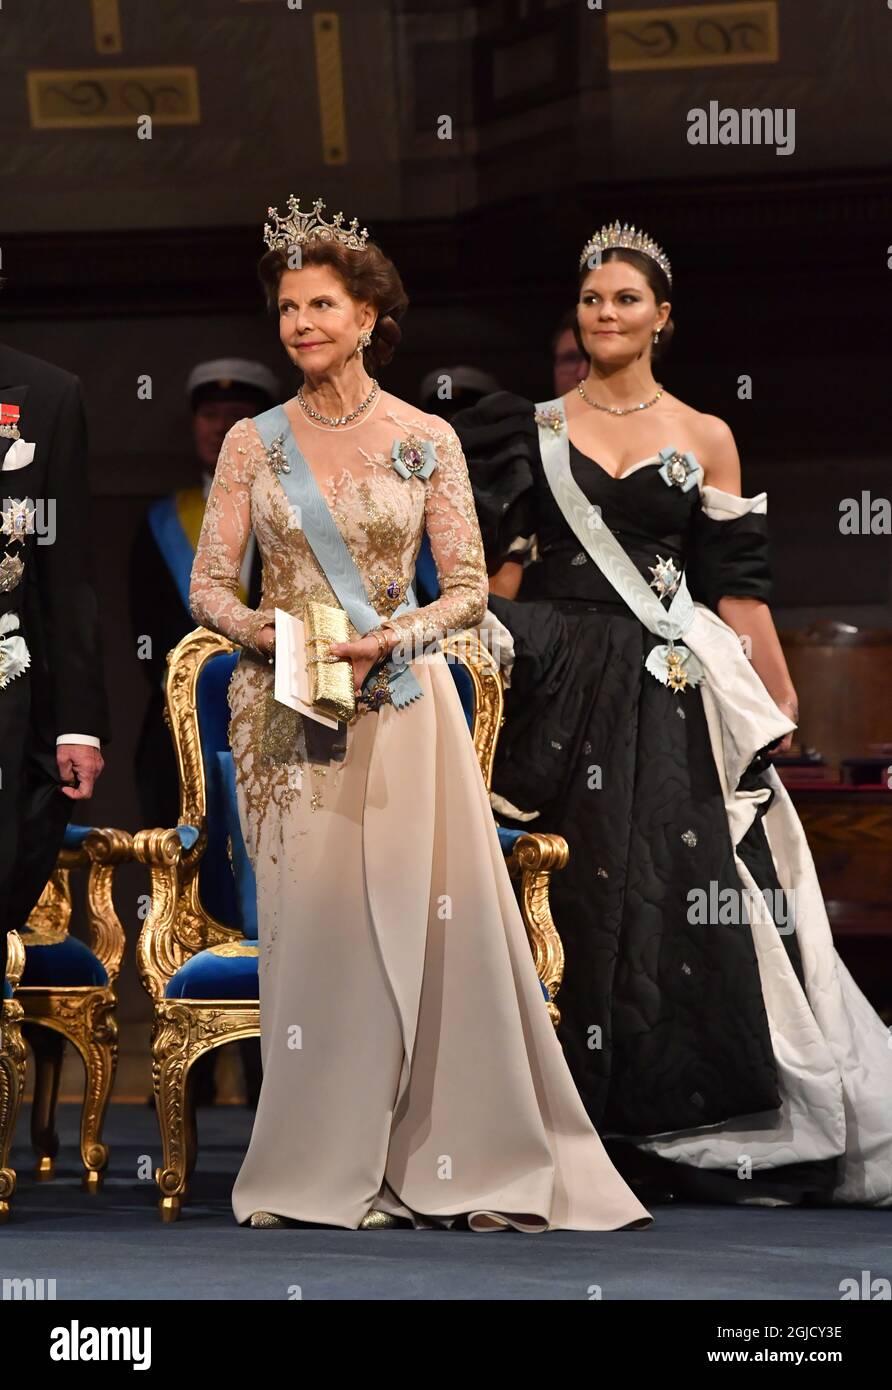 La Regina Silvia e la Principessa Vittoria durante la cerimonia di premio  Nobel nella Sala dei Concerti di Stoccolma, Svezia, martedì 10 dicembre 2019.  Foto: Jonas Ekstromer / TT / kod 10030 Foto stock - Alamy